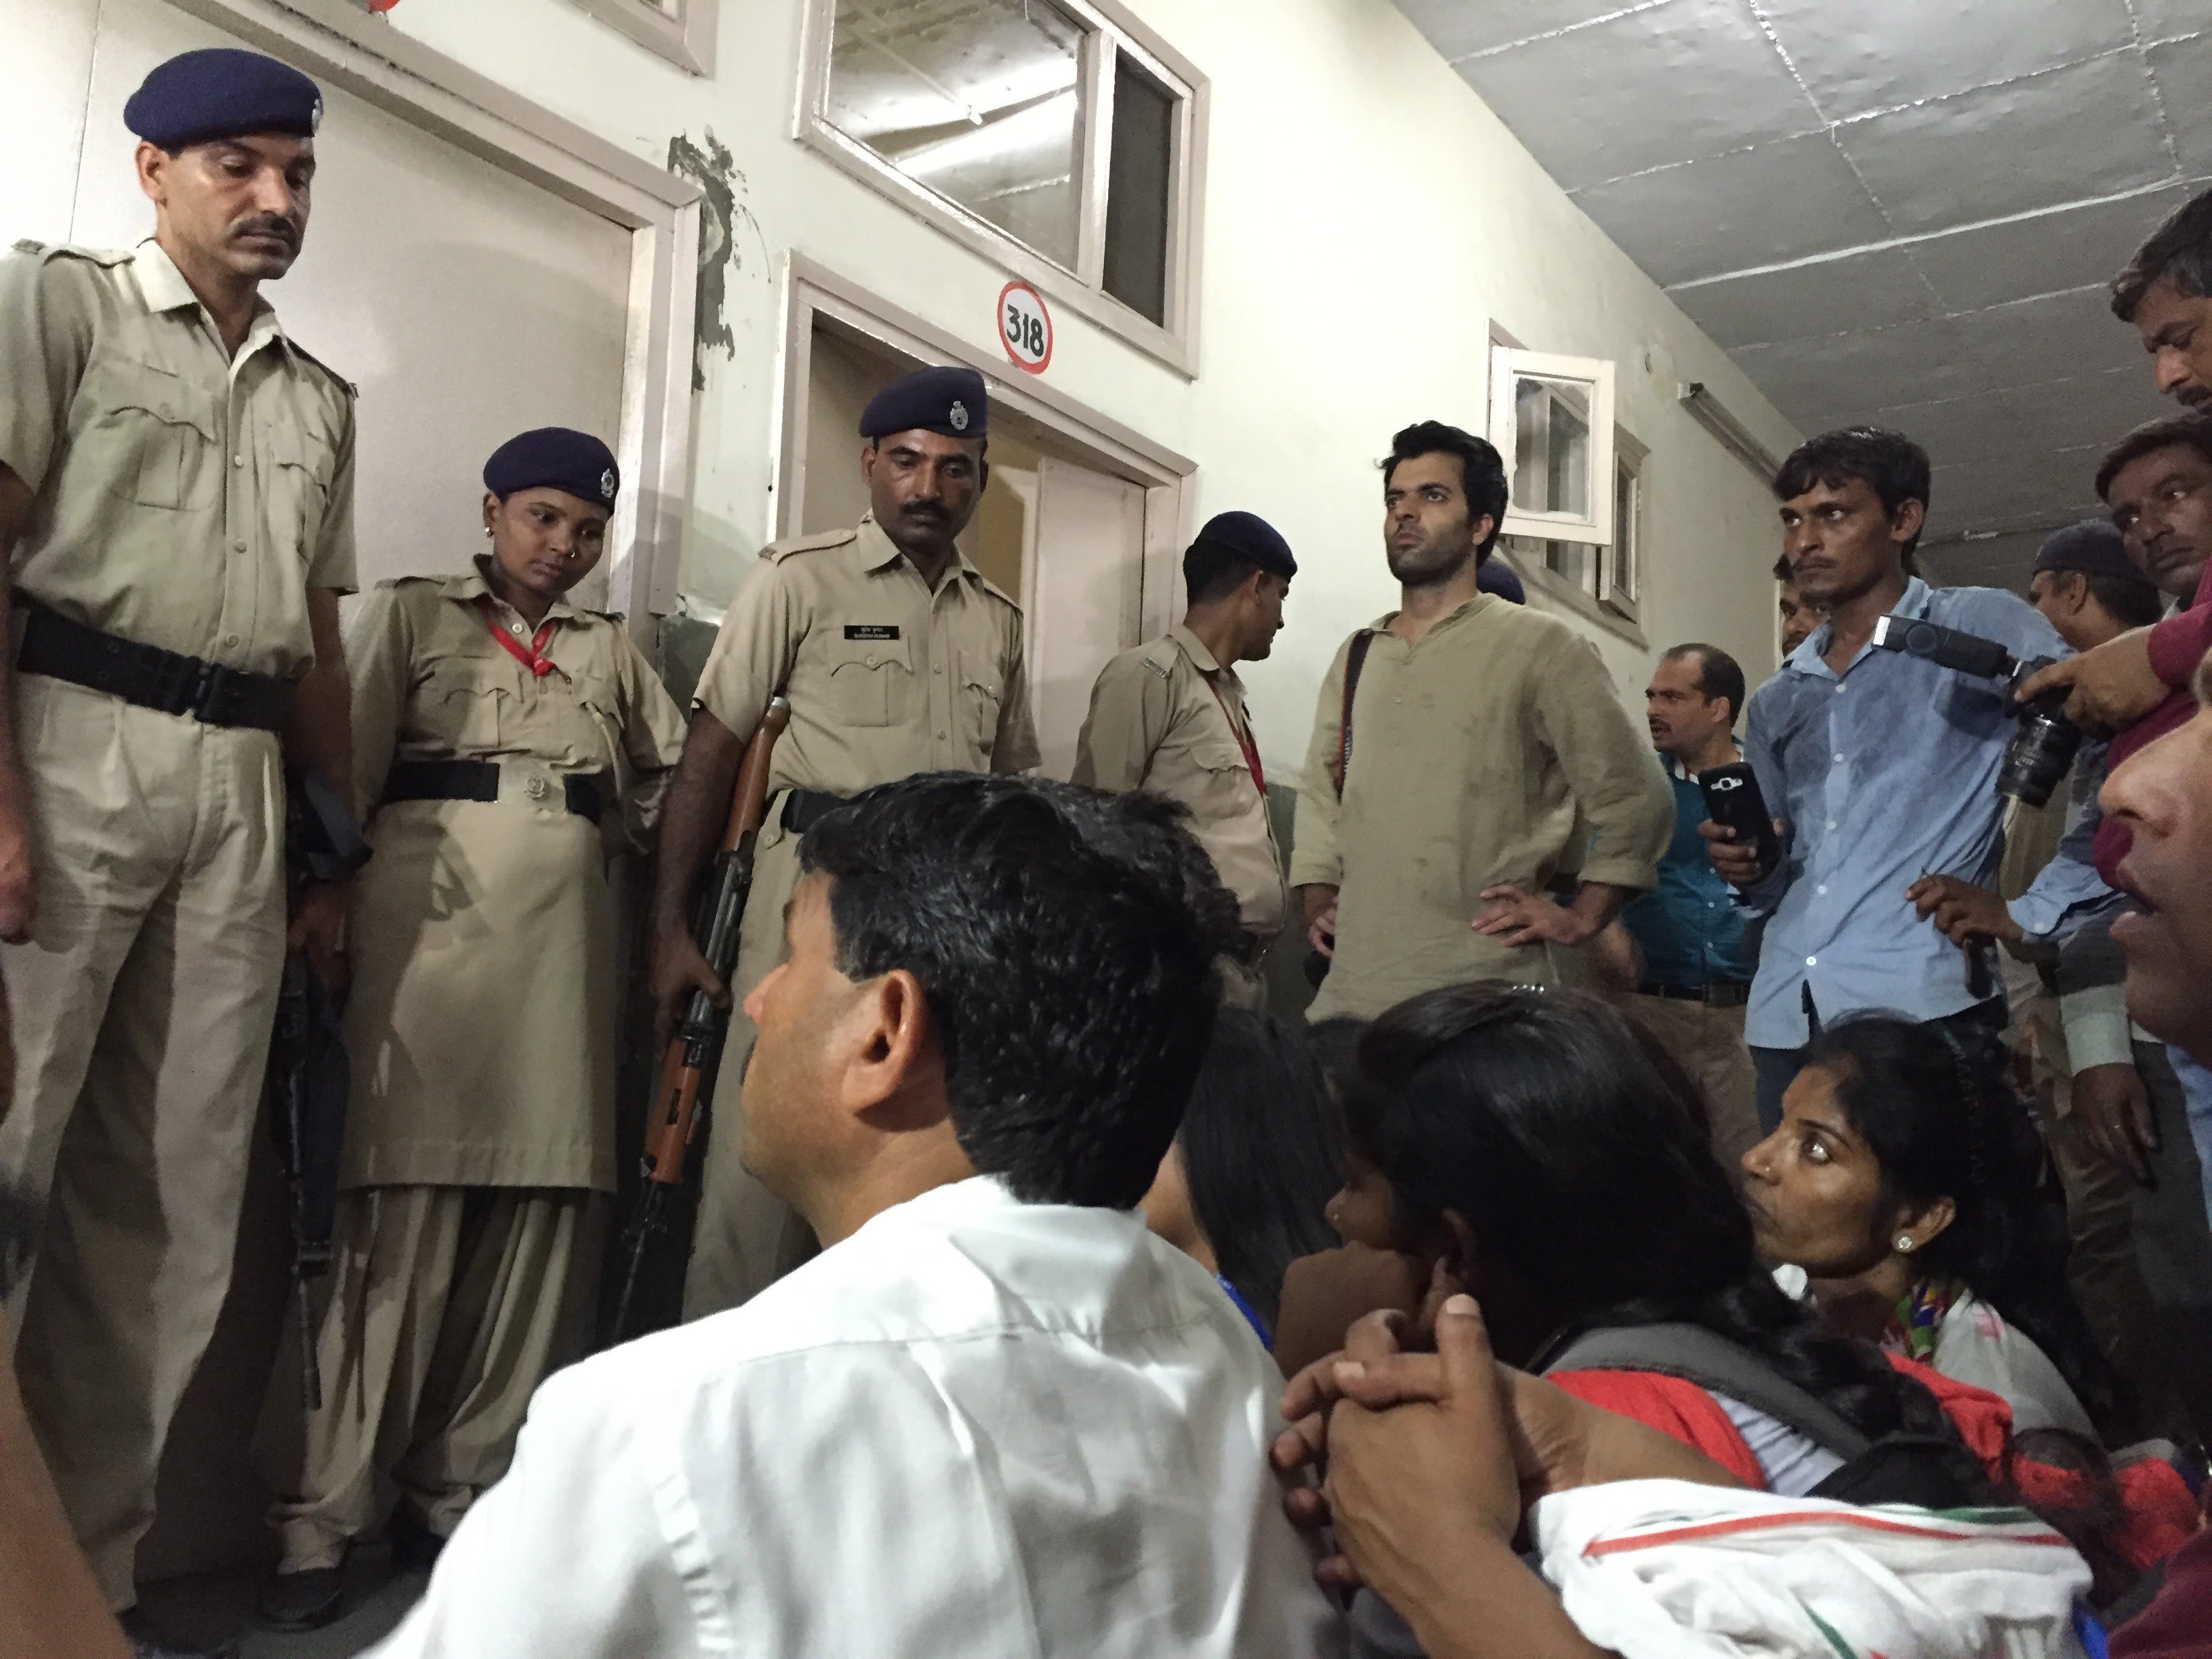 Poilc Raip Xxx - Police: Indian woman raped twice by same men | CNN